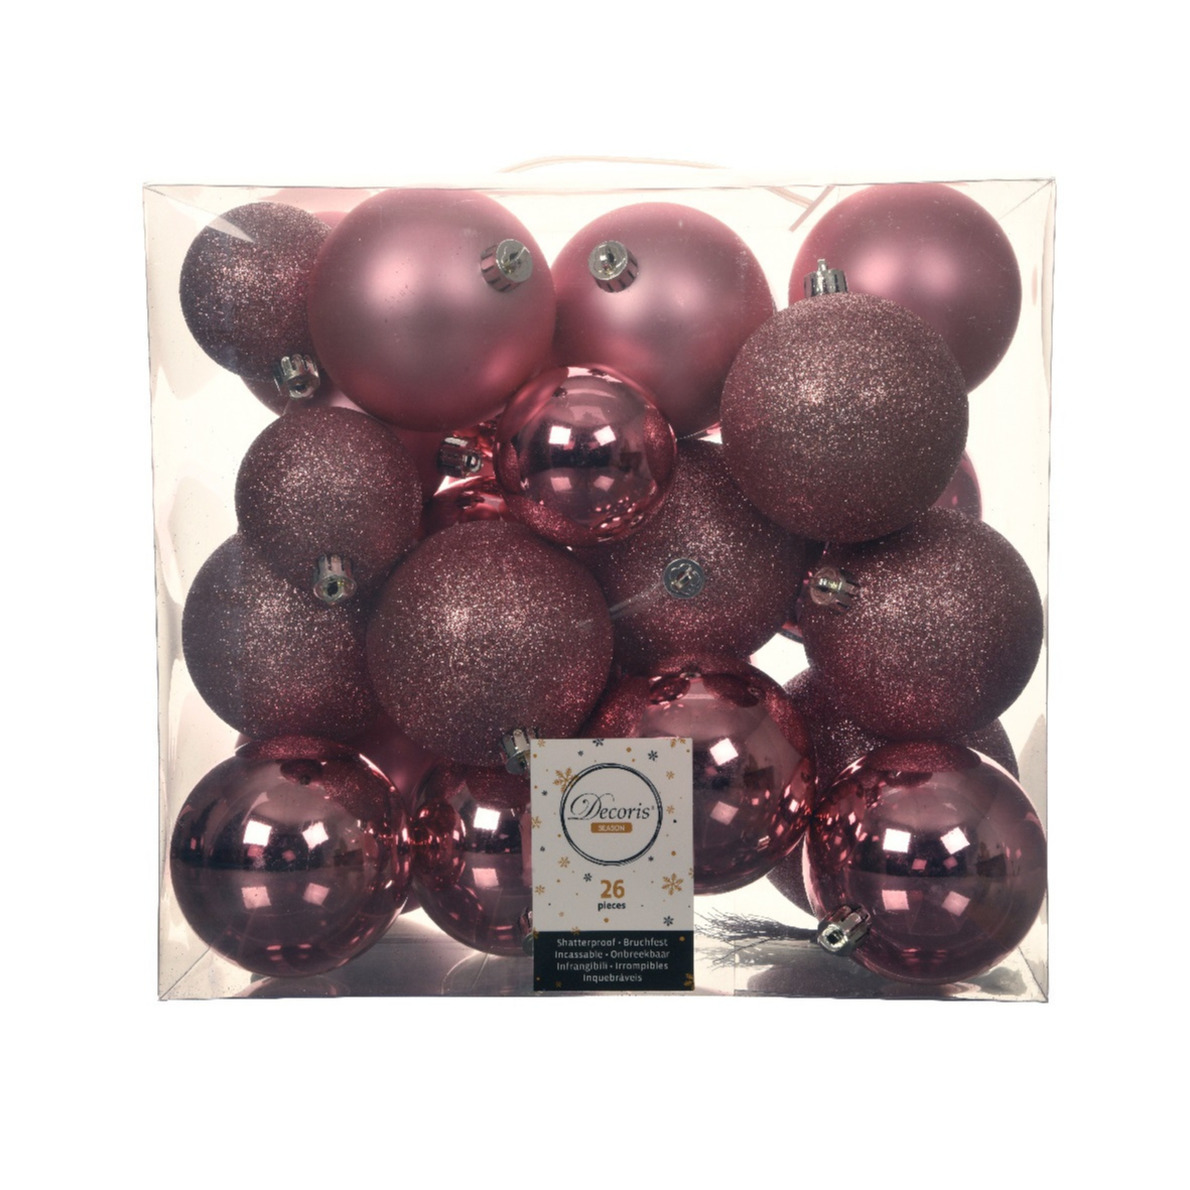 Kerstballen 26x st lippenstift roze 6-8-10 cm kunststof kerstversiering